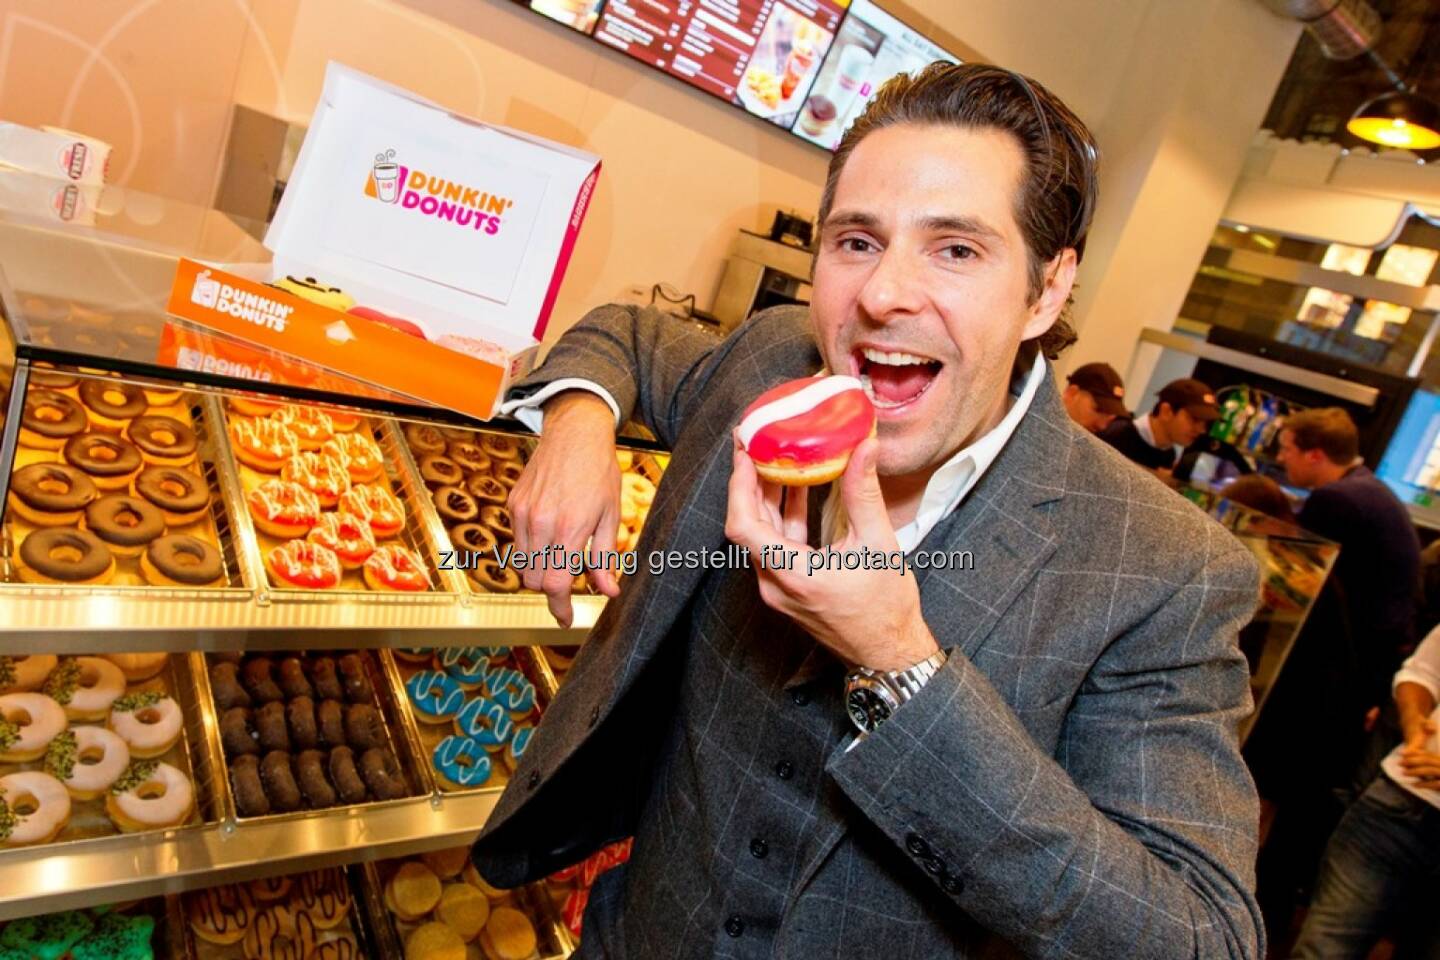 Patrick Marchl, Dunkin' Donuts